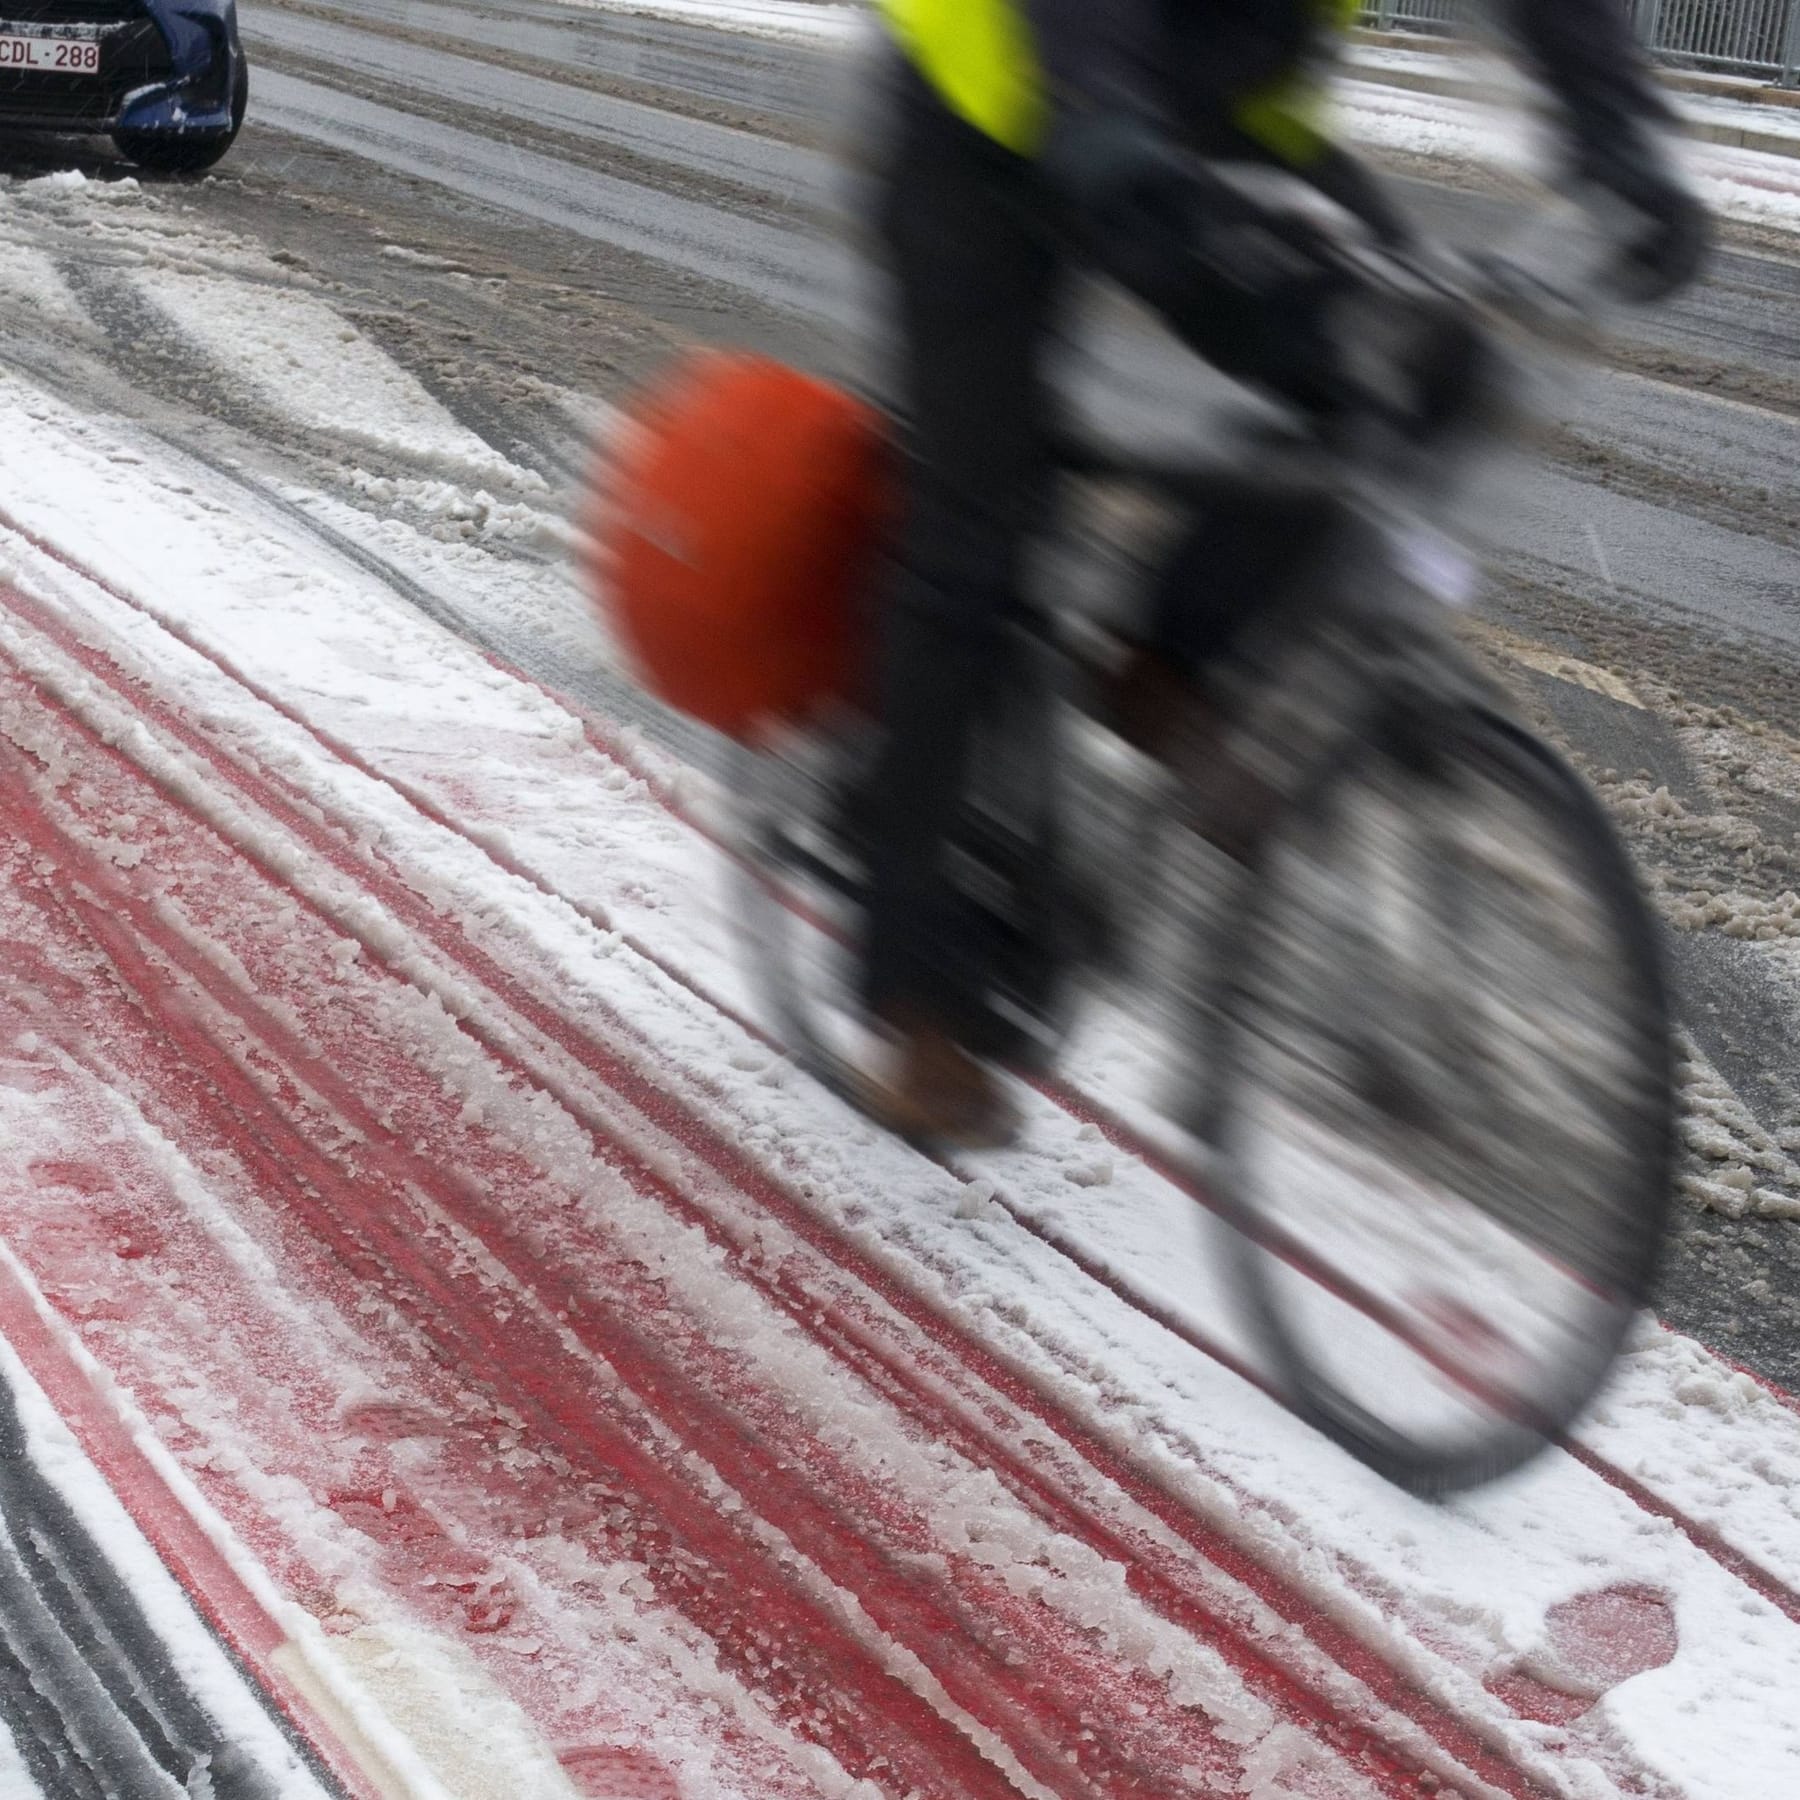 Fahrradschloss eingefroren - das hilft